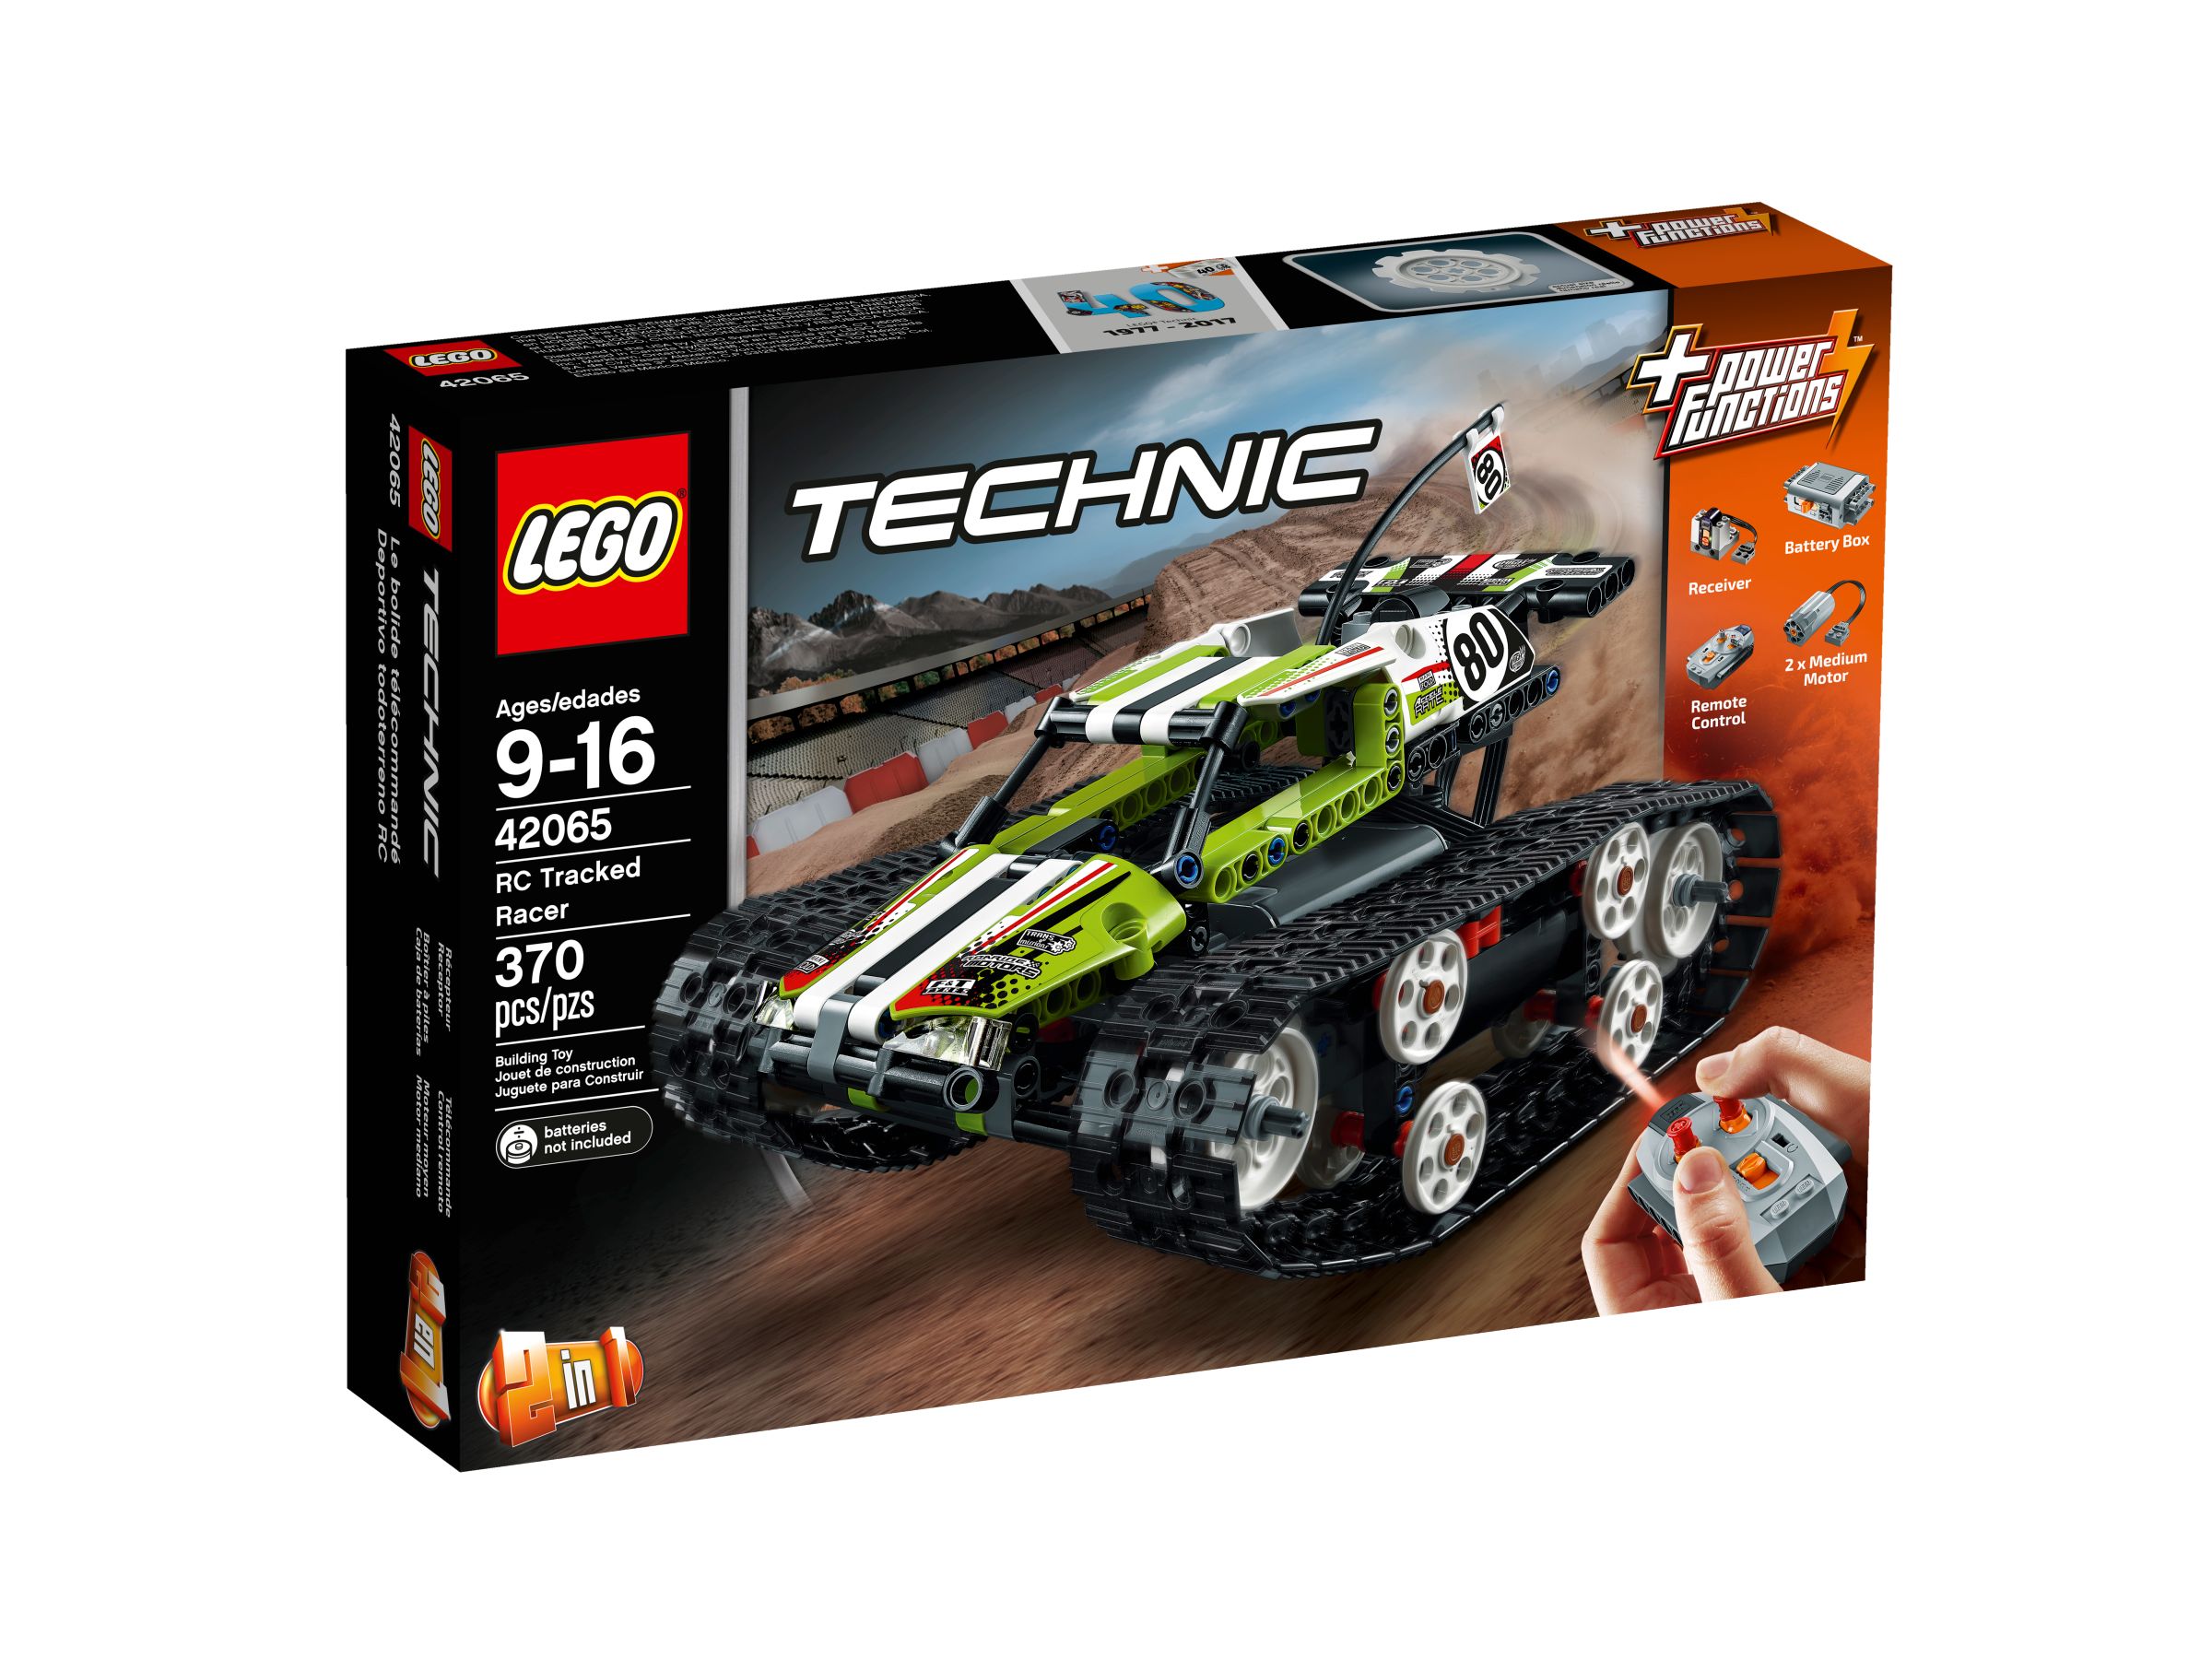 LEGO Technic 42065 Ferngesteuerter Tracked Racer LEGO_42065_alt1.jpg